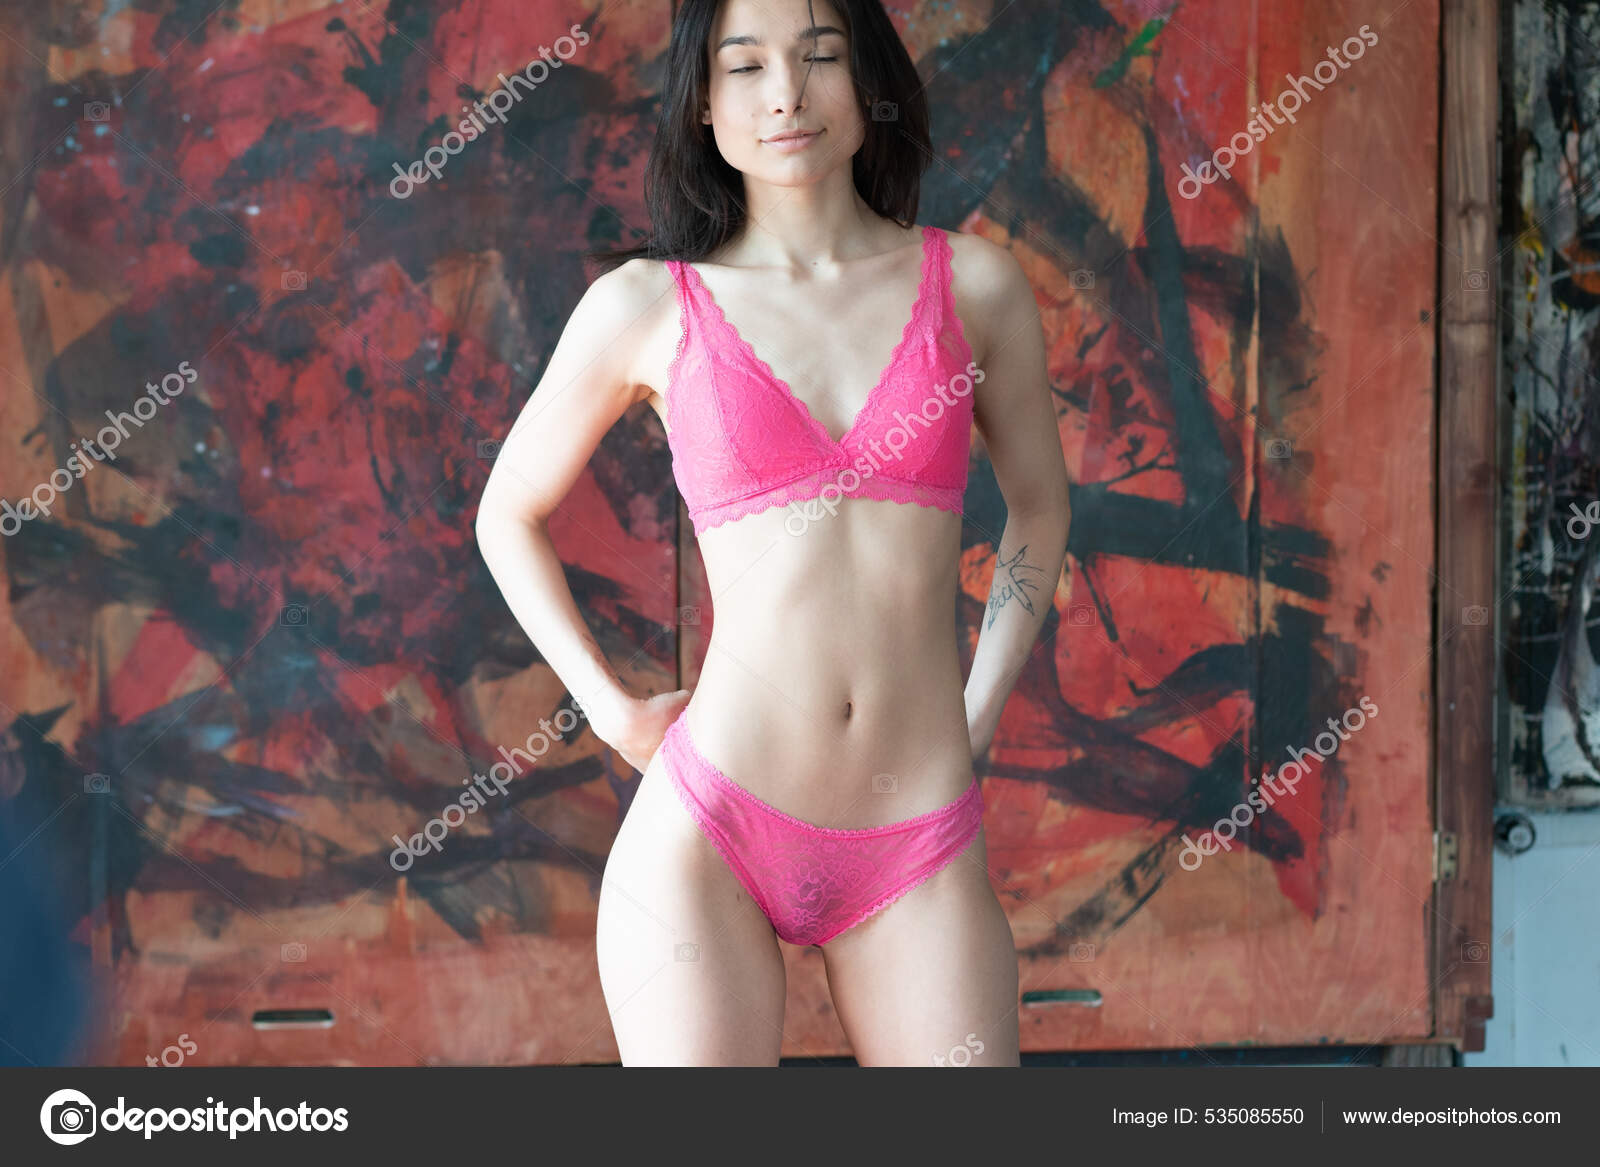 https://st.depositphotos.com/10086424/53508/i/1600/depositphotos_535085550-stock-photo-young-beautiful-woman-posing-red.jpg